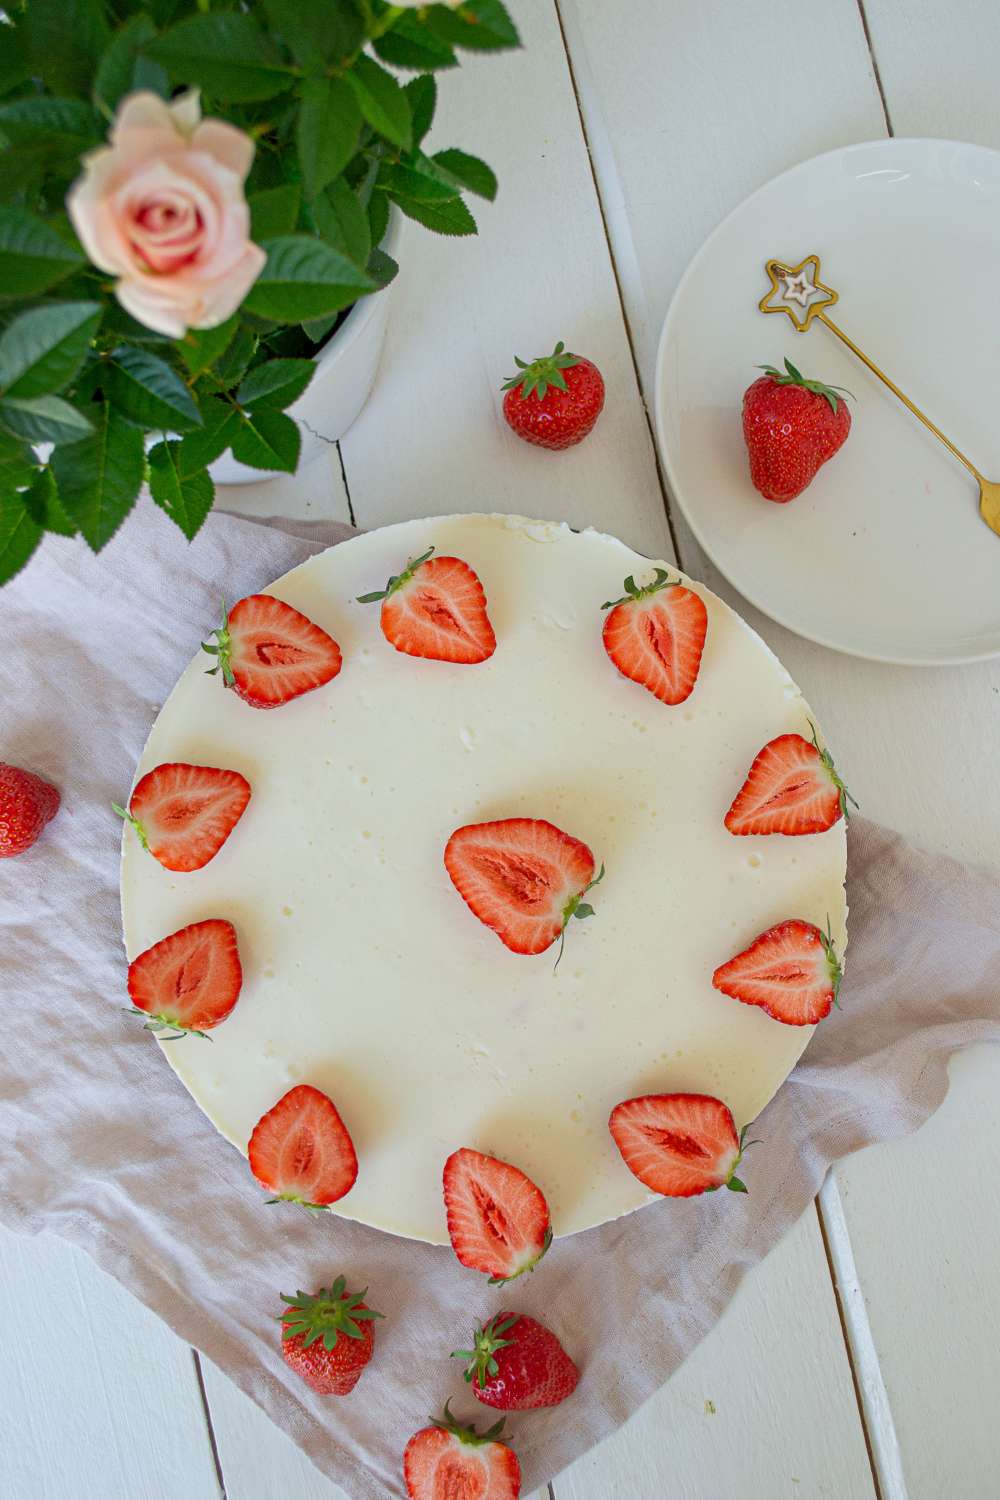 Erdbeer Joghurt Torte mit Nussboden low carb oder klassisch glutenfrei